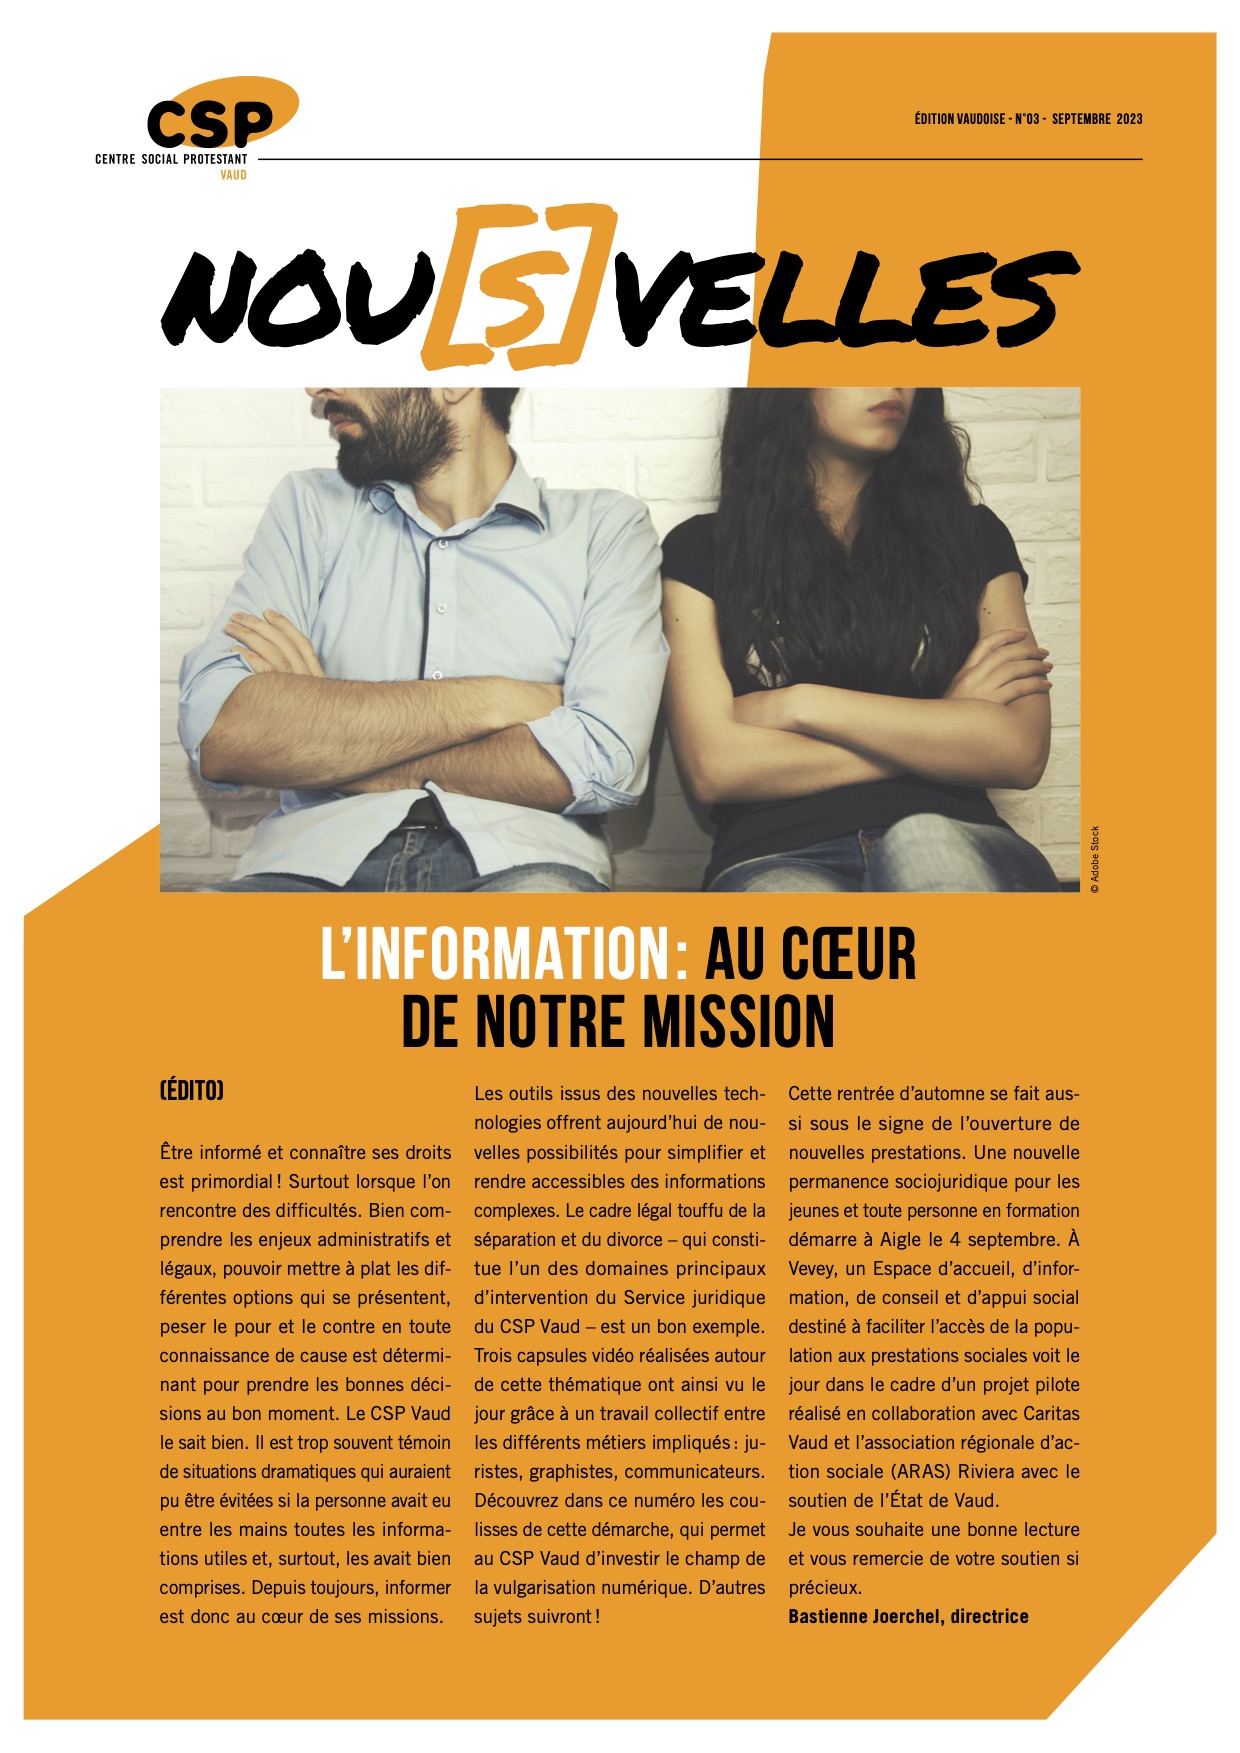 Couverture du journal des Nouvelles du CSP Vaud sur la séparation et le divorce - capsules vidéo